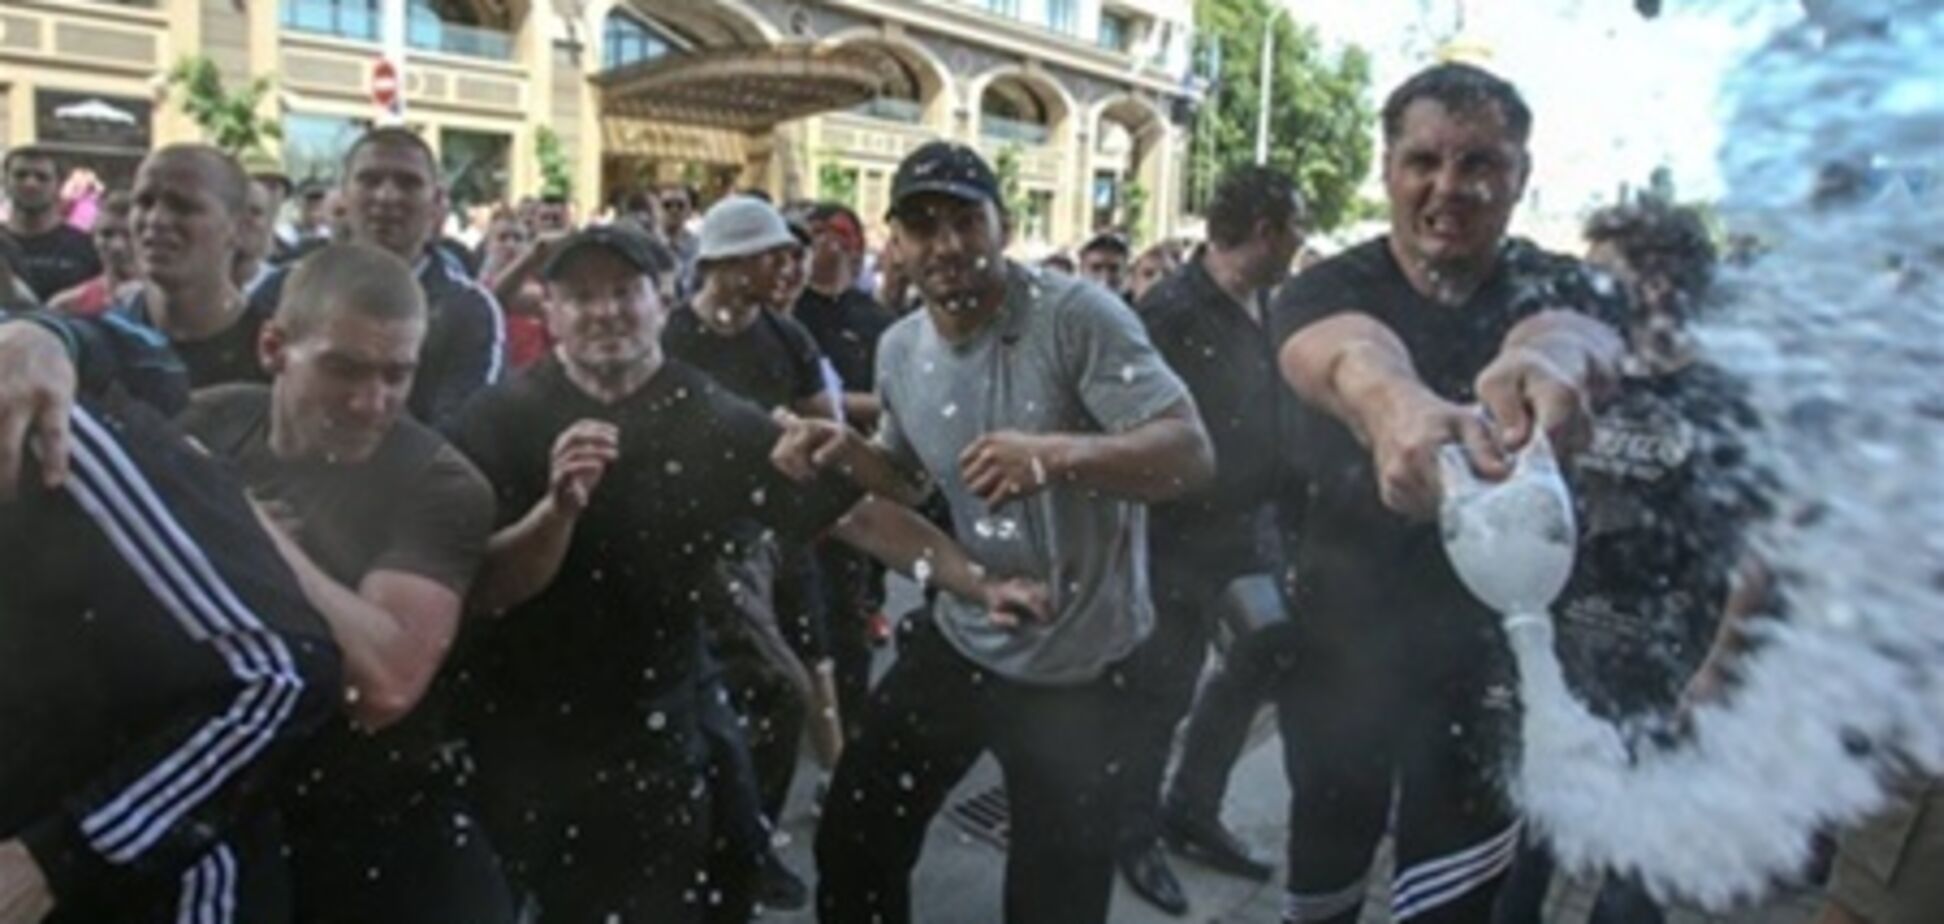 Встановлено особу ще одного учасника бійки 18 травня в Києві